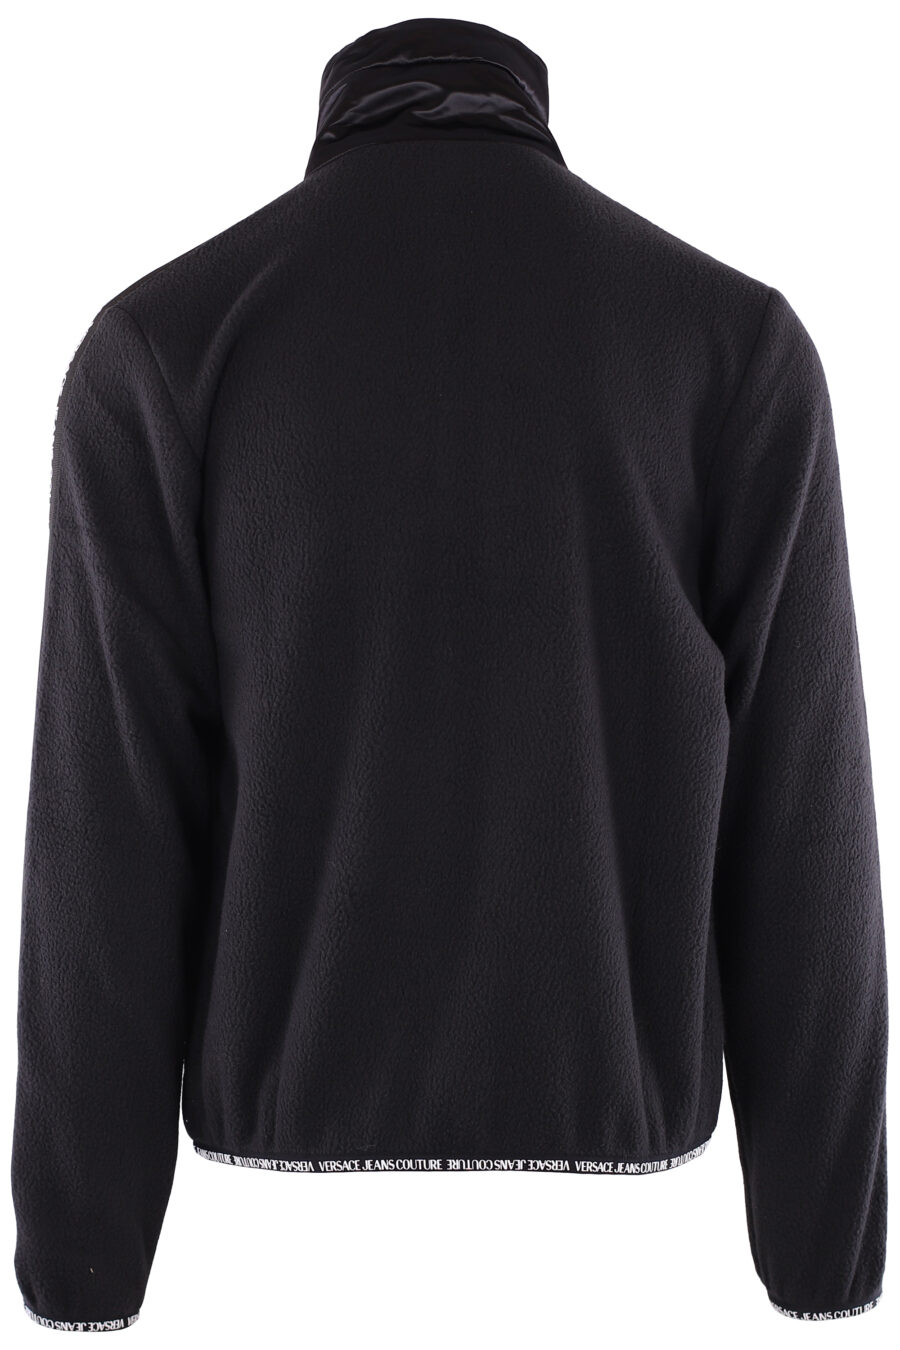 Black fleece sweatshirt with ribbon logo on sleeves - IMG 6373